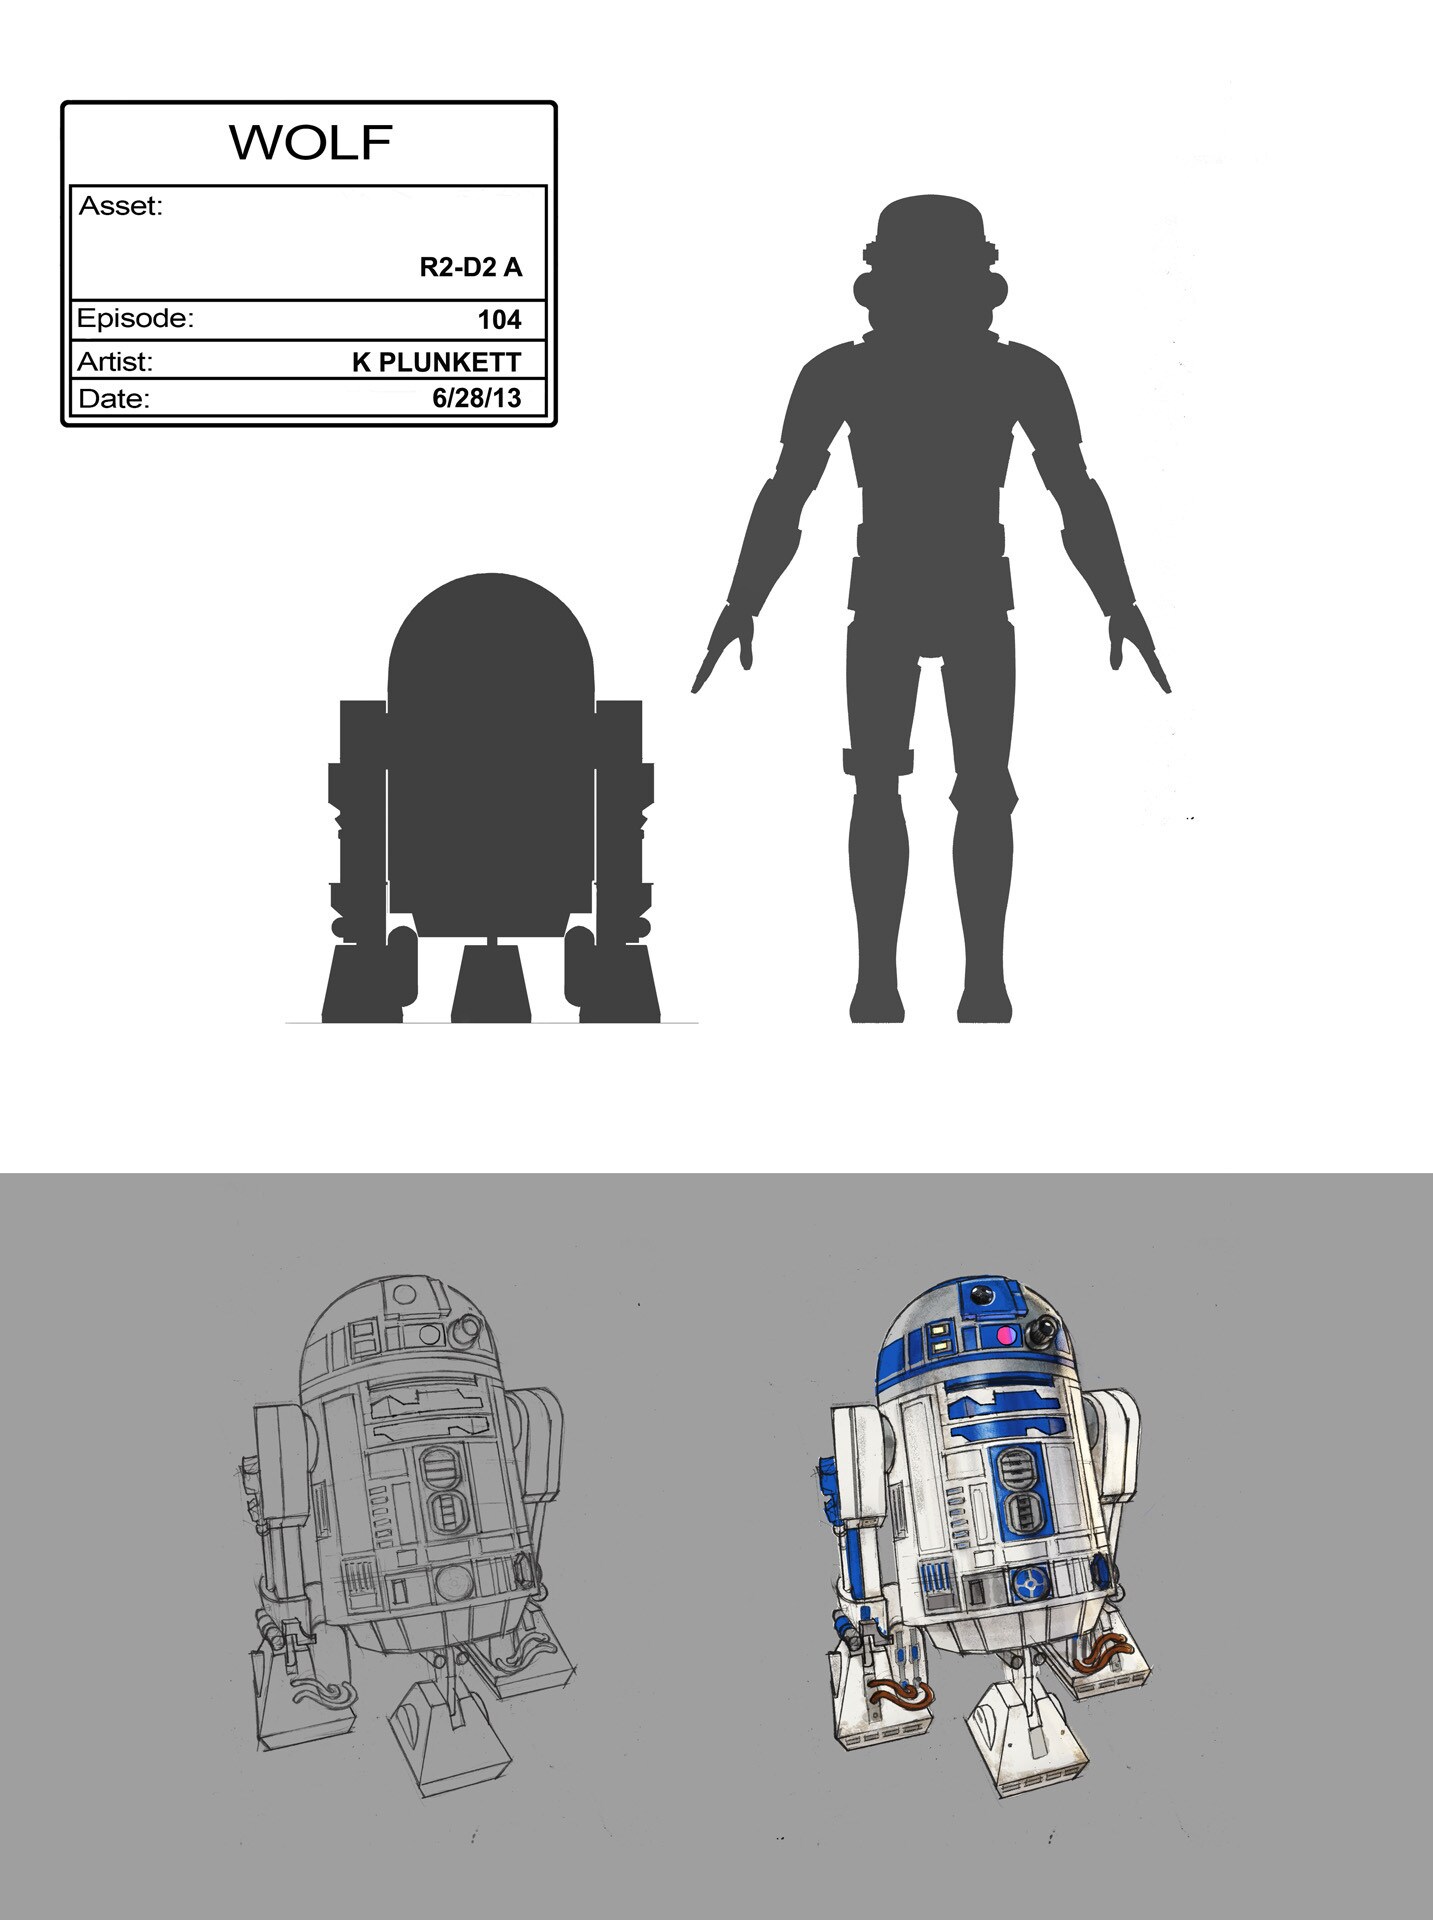 R2-D2 full character illustration by Kilian Plunkett.